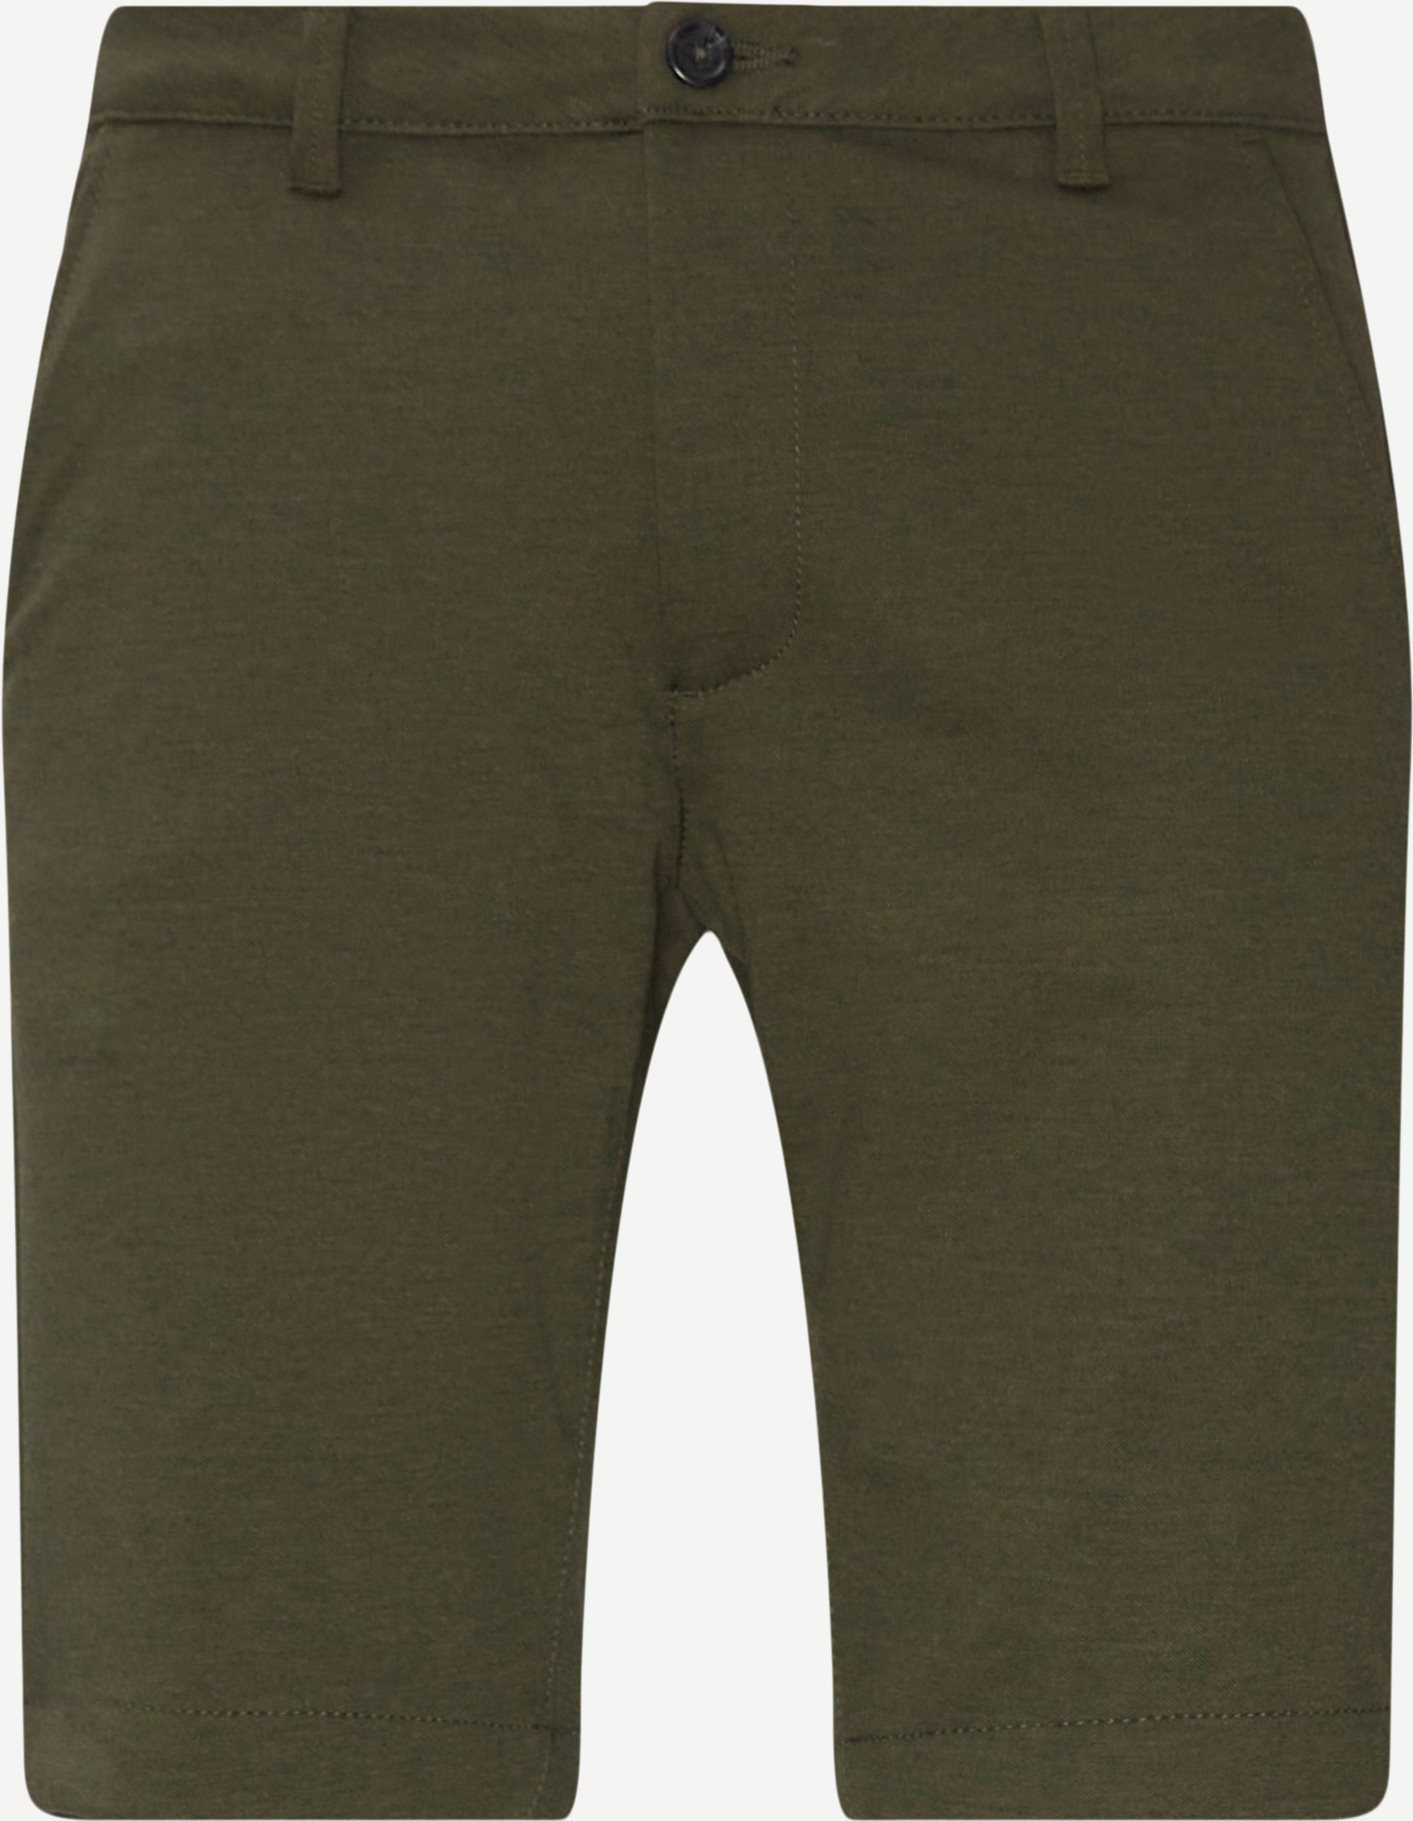 Tanzania Chinos Shorts - Shorts - Regular fit - Army